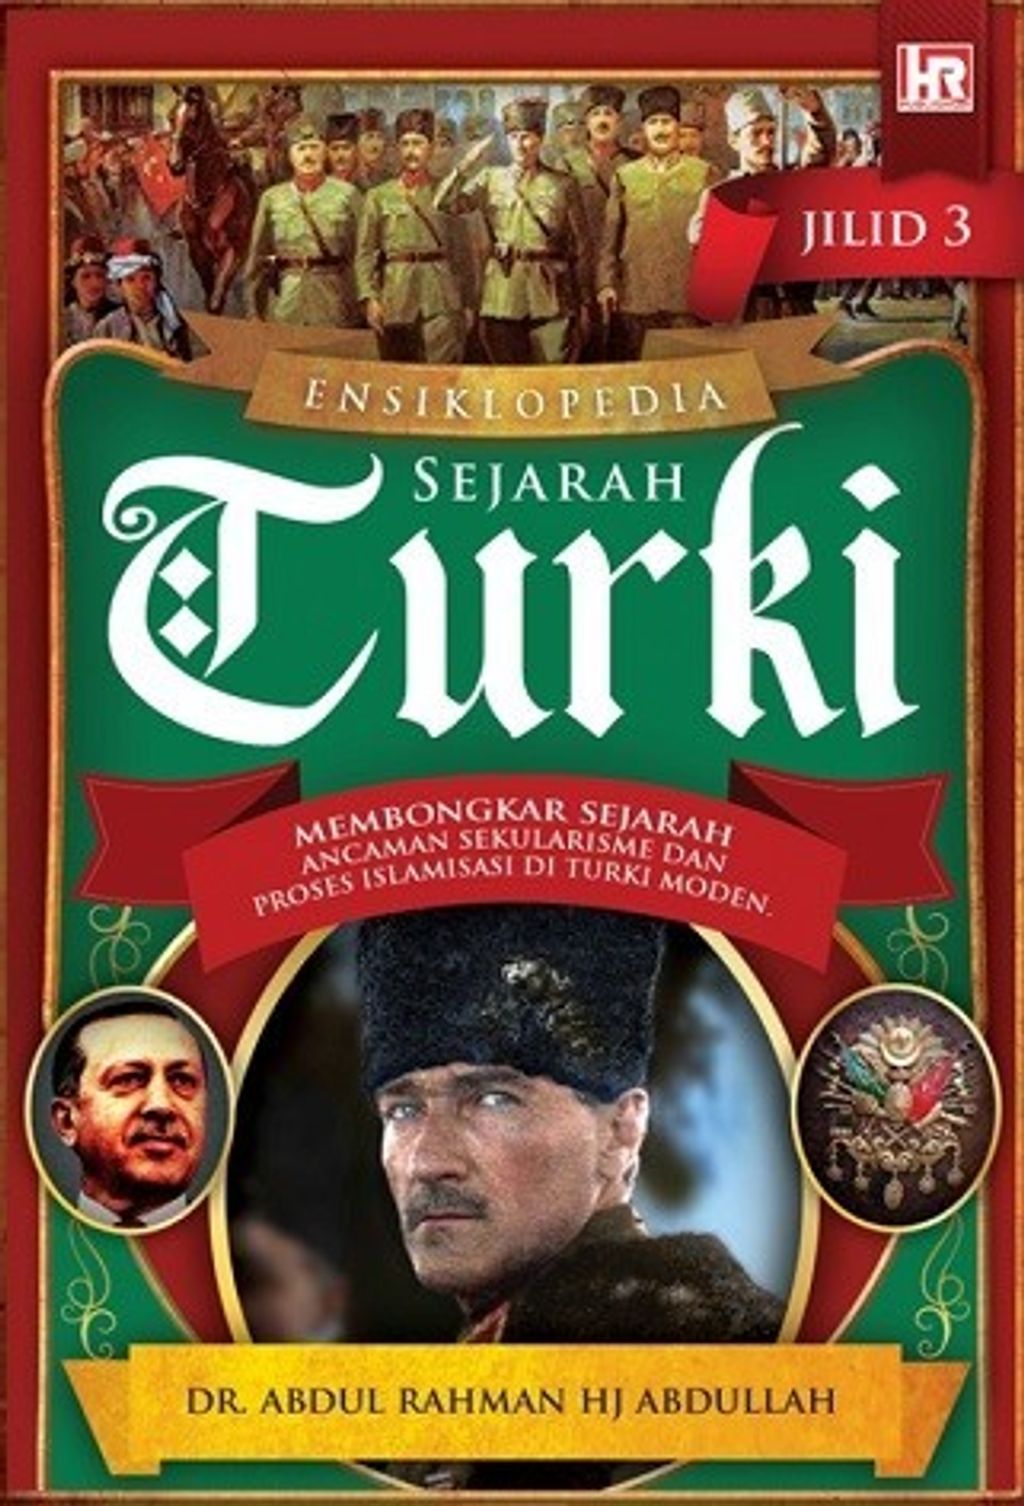 Ensiklopedia sejarah turki 3.jpg